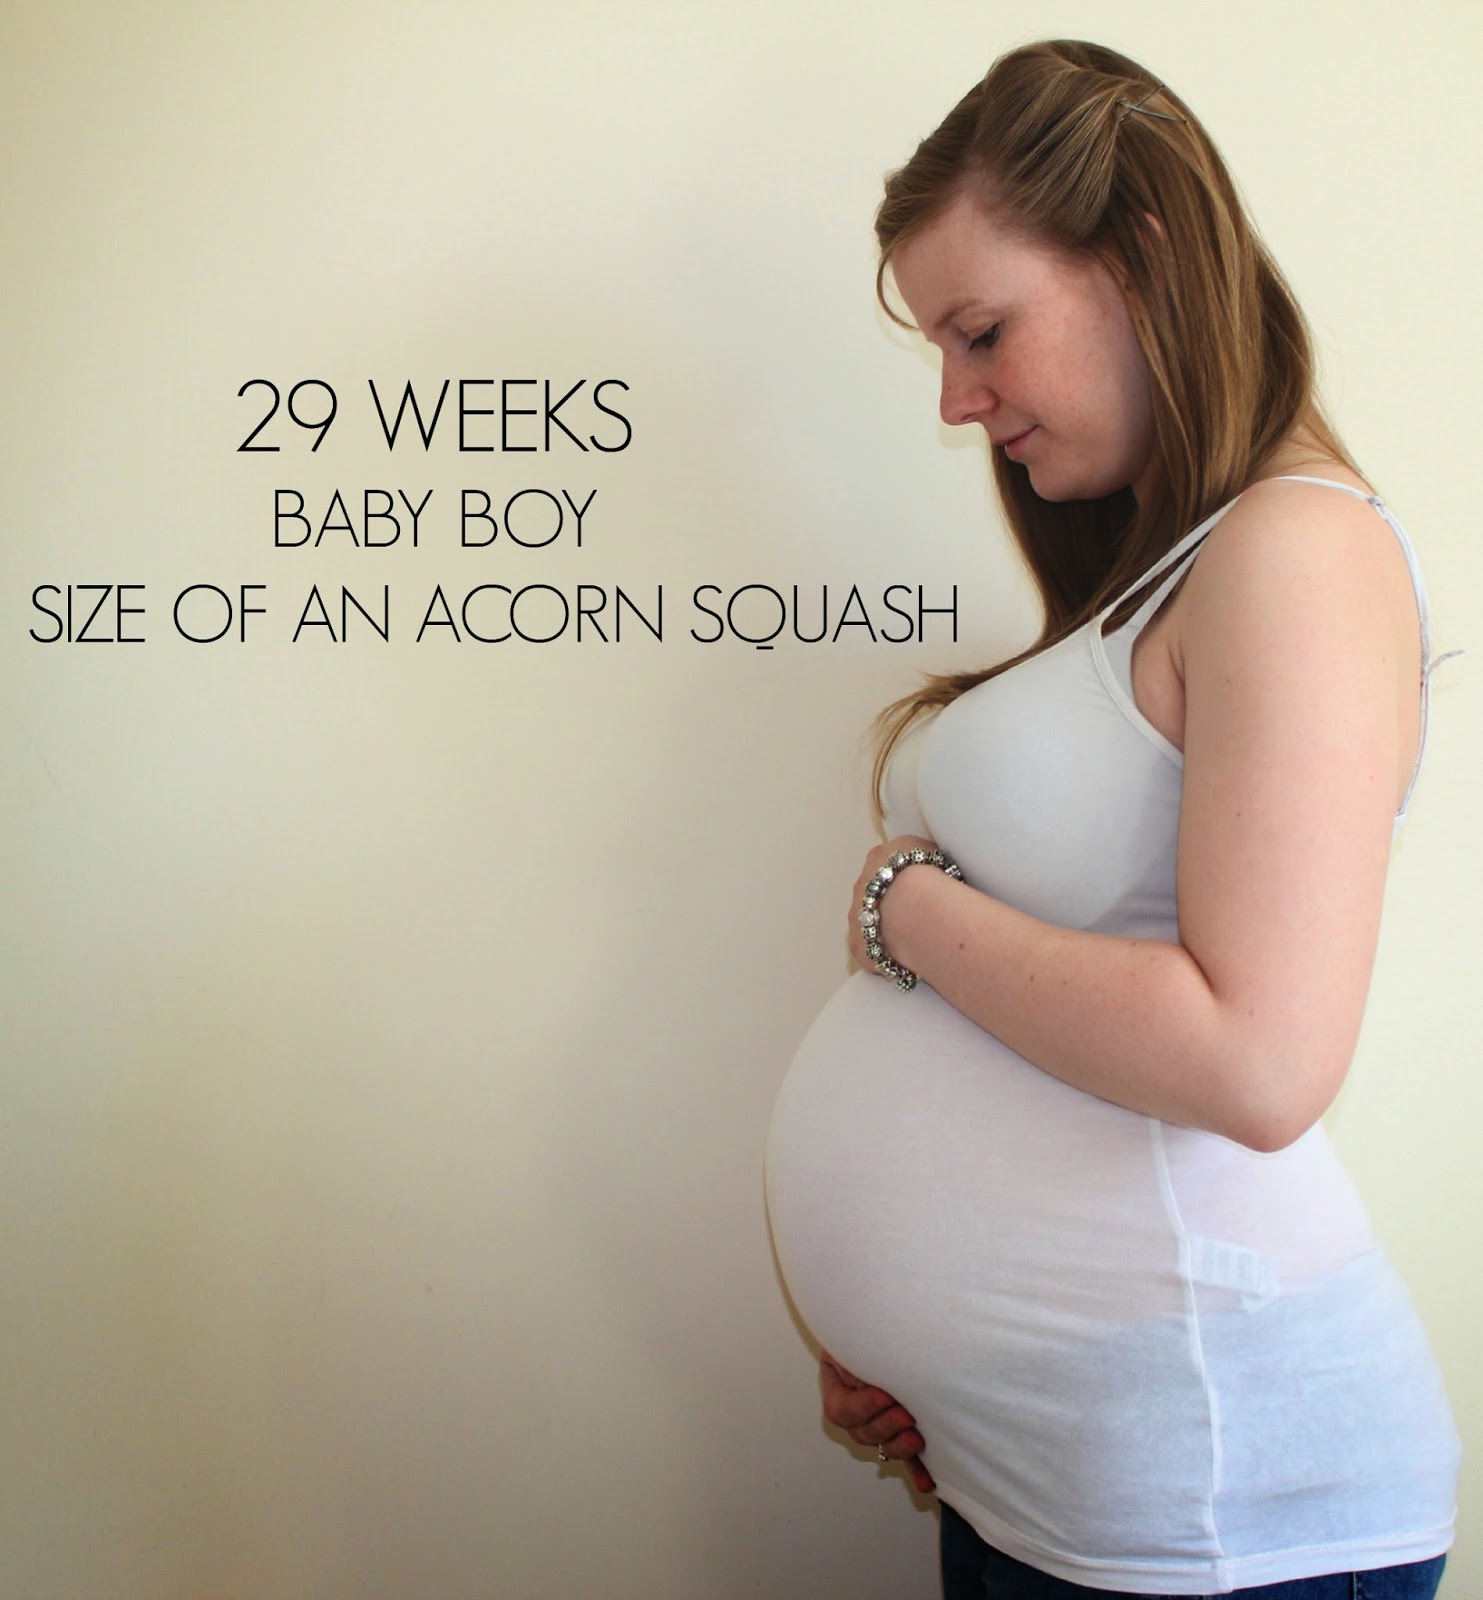 Pregnant Plus. Чего ждать на 40 неделе беременности. Как малыш расположен в животе на 29 неделе беременности.